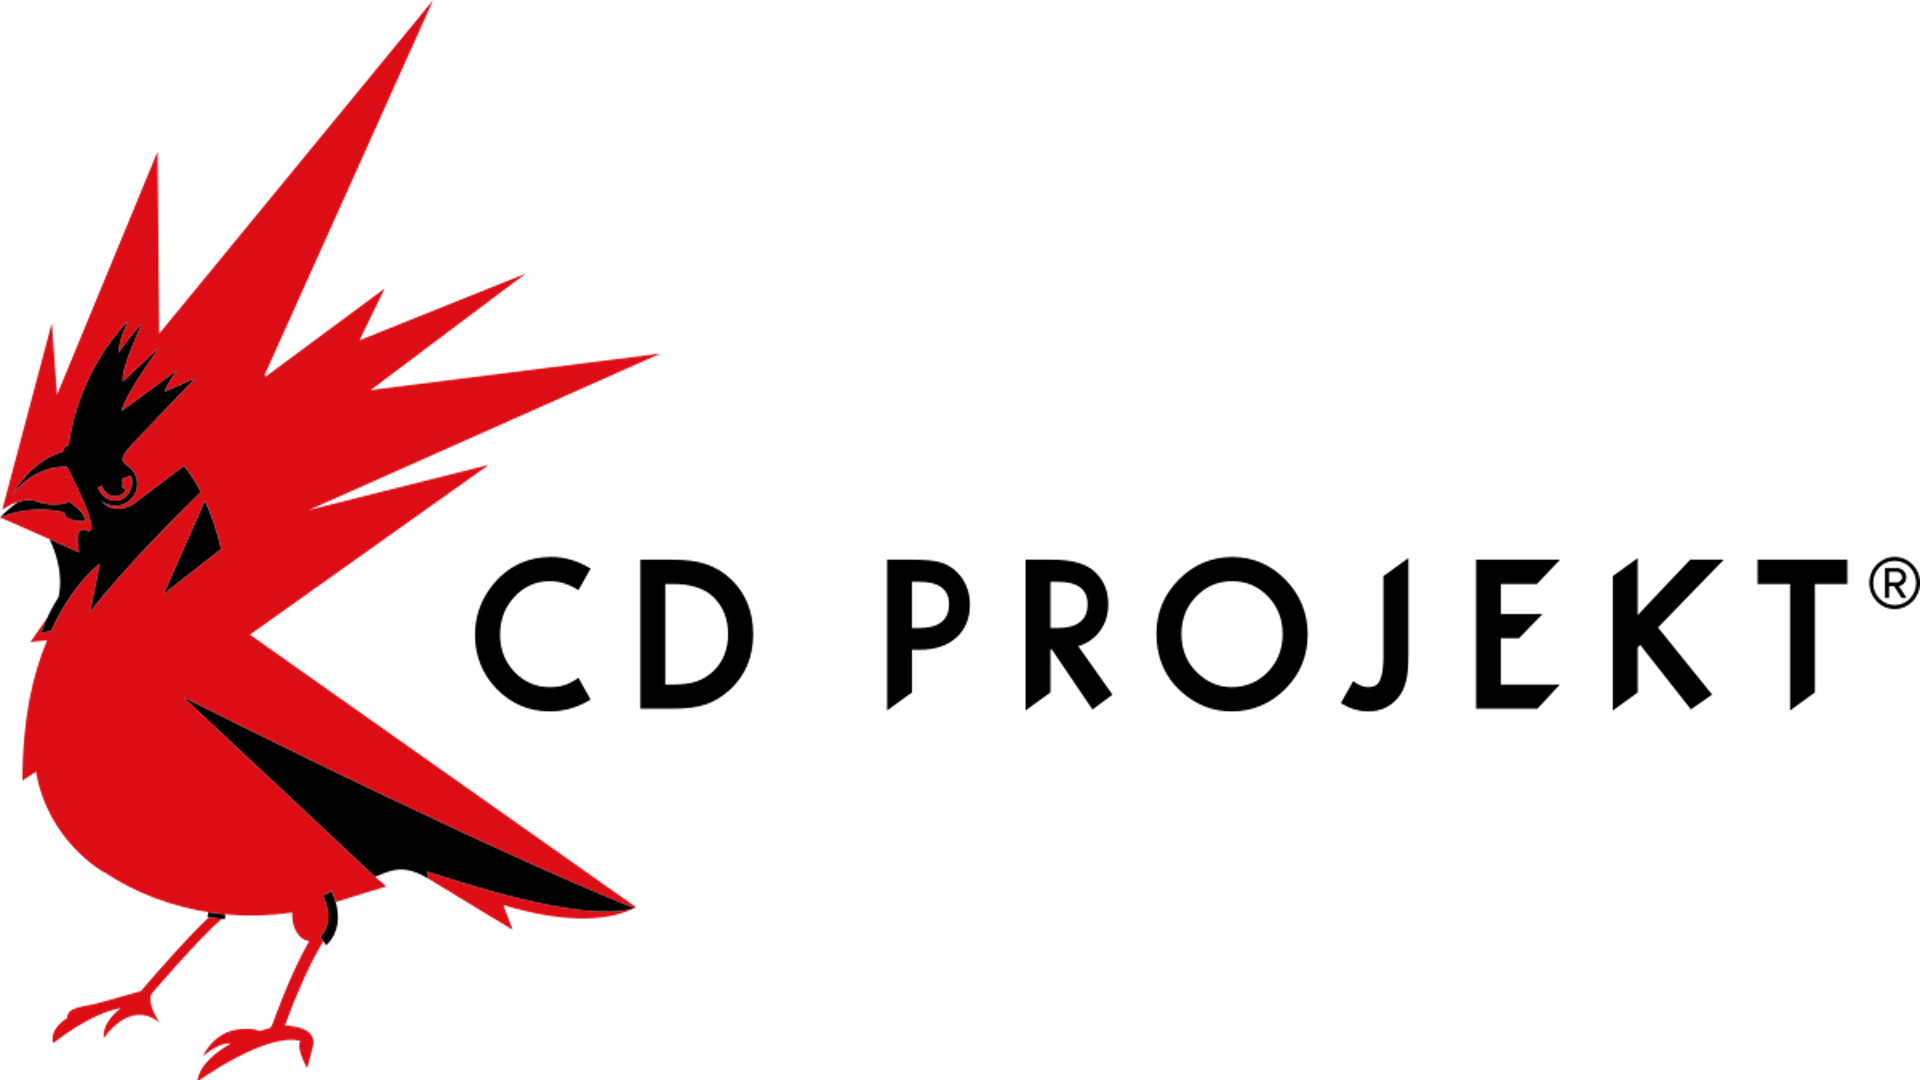 หุ้นของ CD Projekt มีมูลค่าลดลงไปกว่า 75% นับตั้งแต่เปิดตัว Cyberpunk 2077